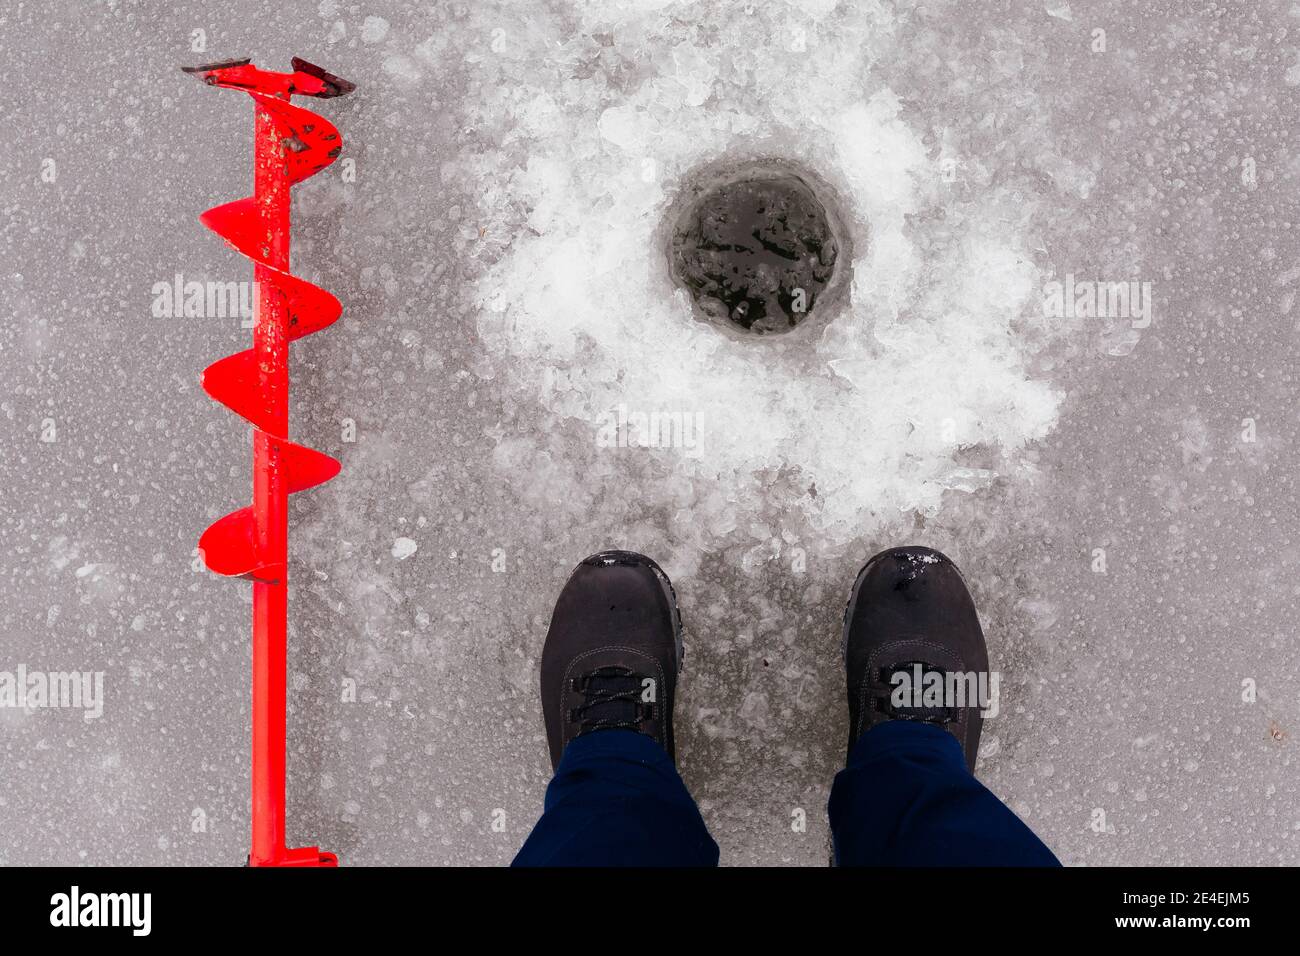 Vue du trou de glace, des bottes d'homme et de la vis à glace rouge. Pêche d'hiver sur le lac. Concept de pêche sous la glace Banque D'Images